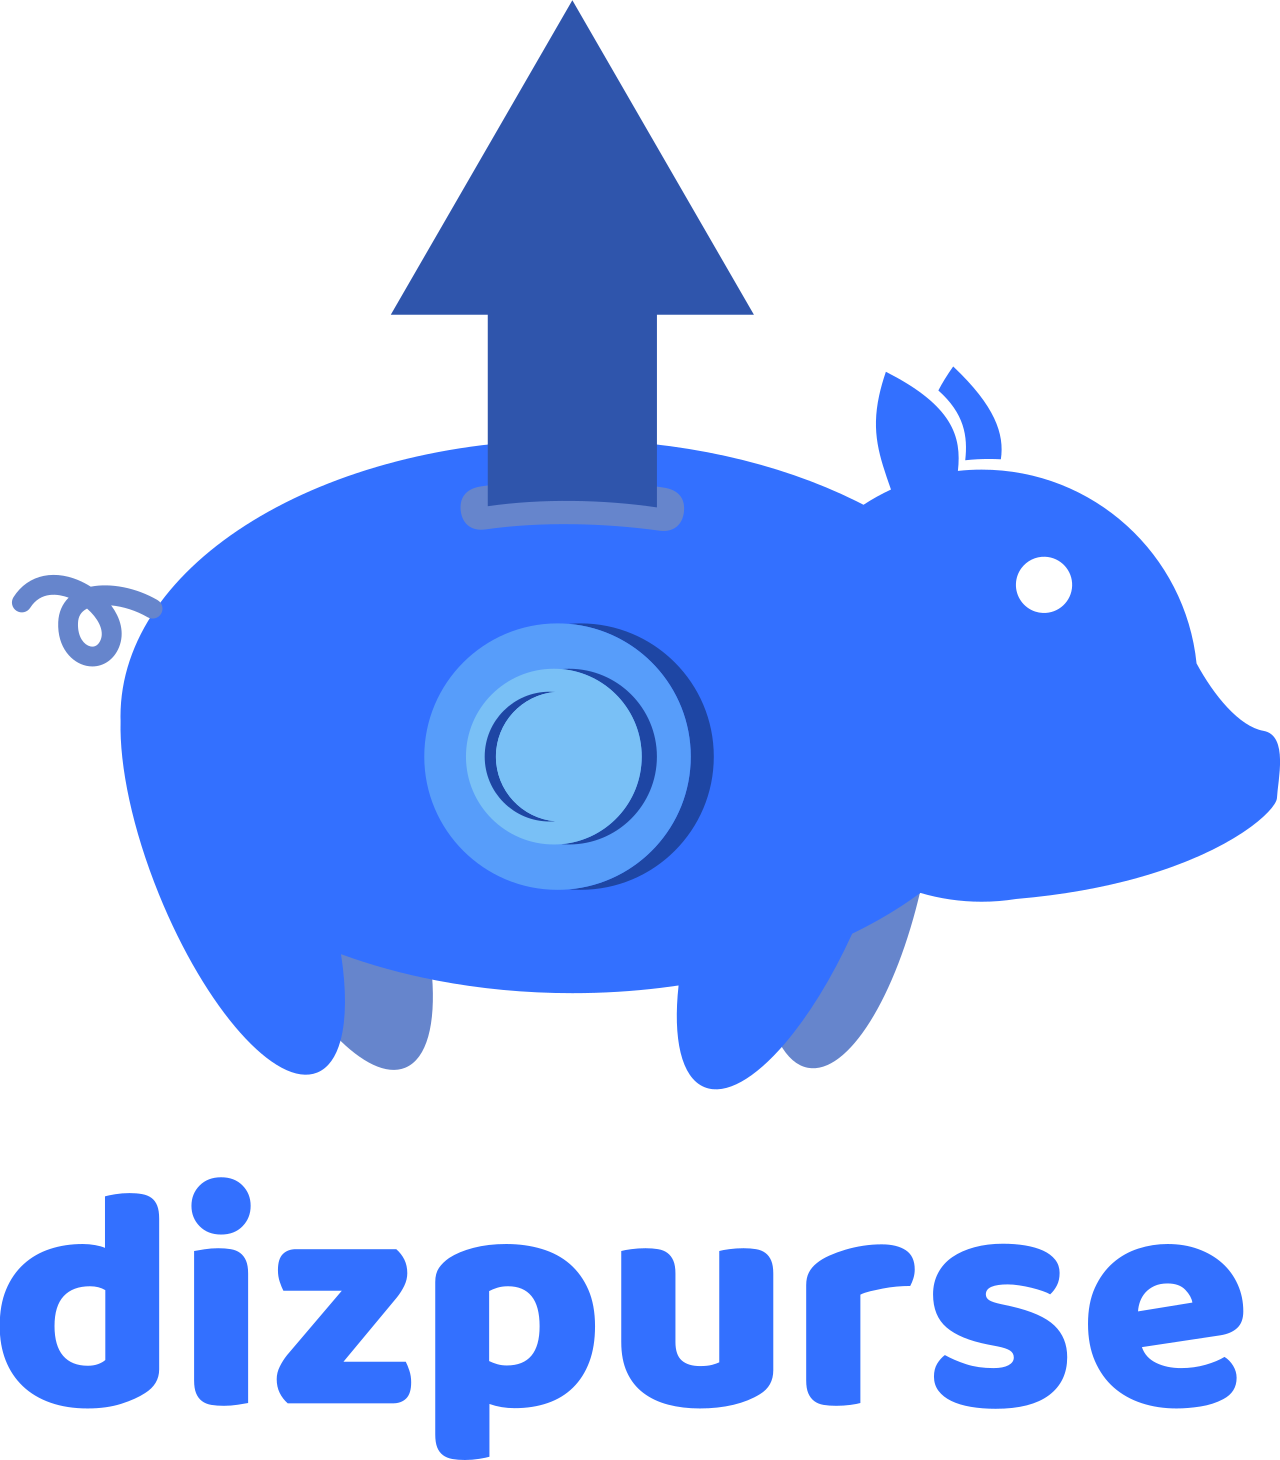 dizpurse's logo